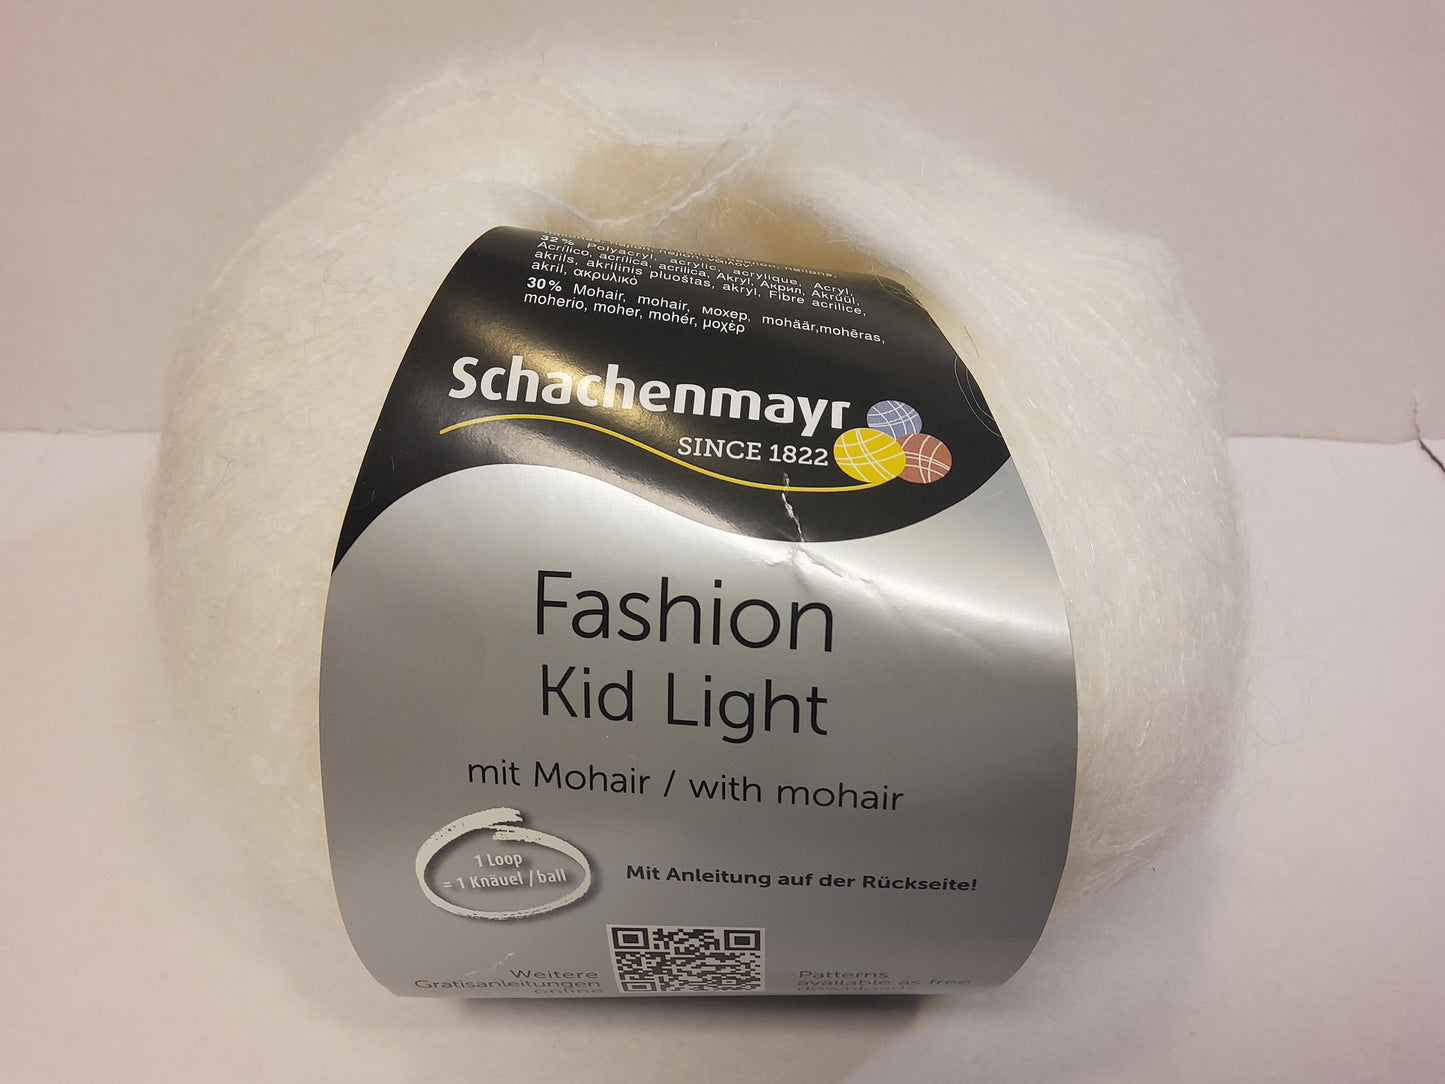 Fashion Kid Light